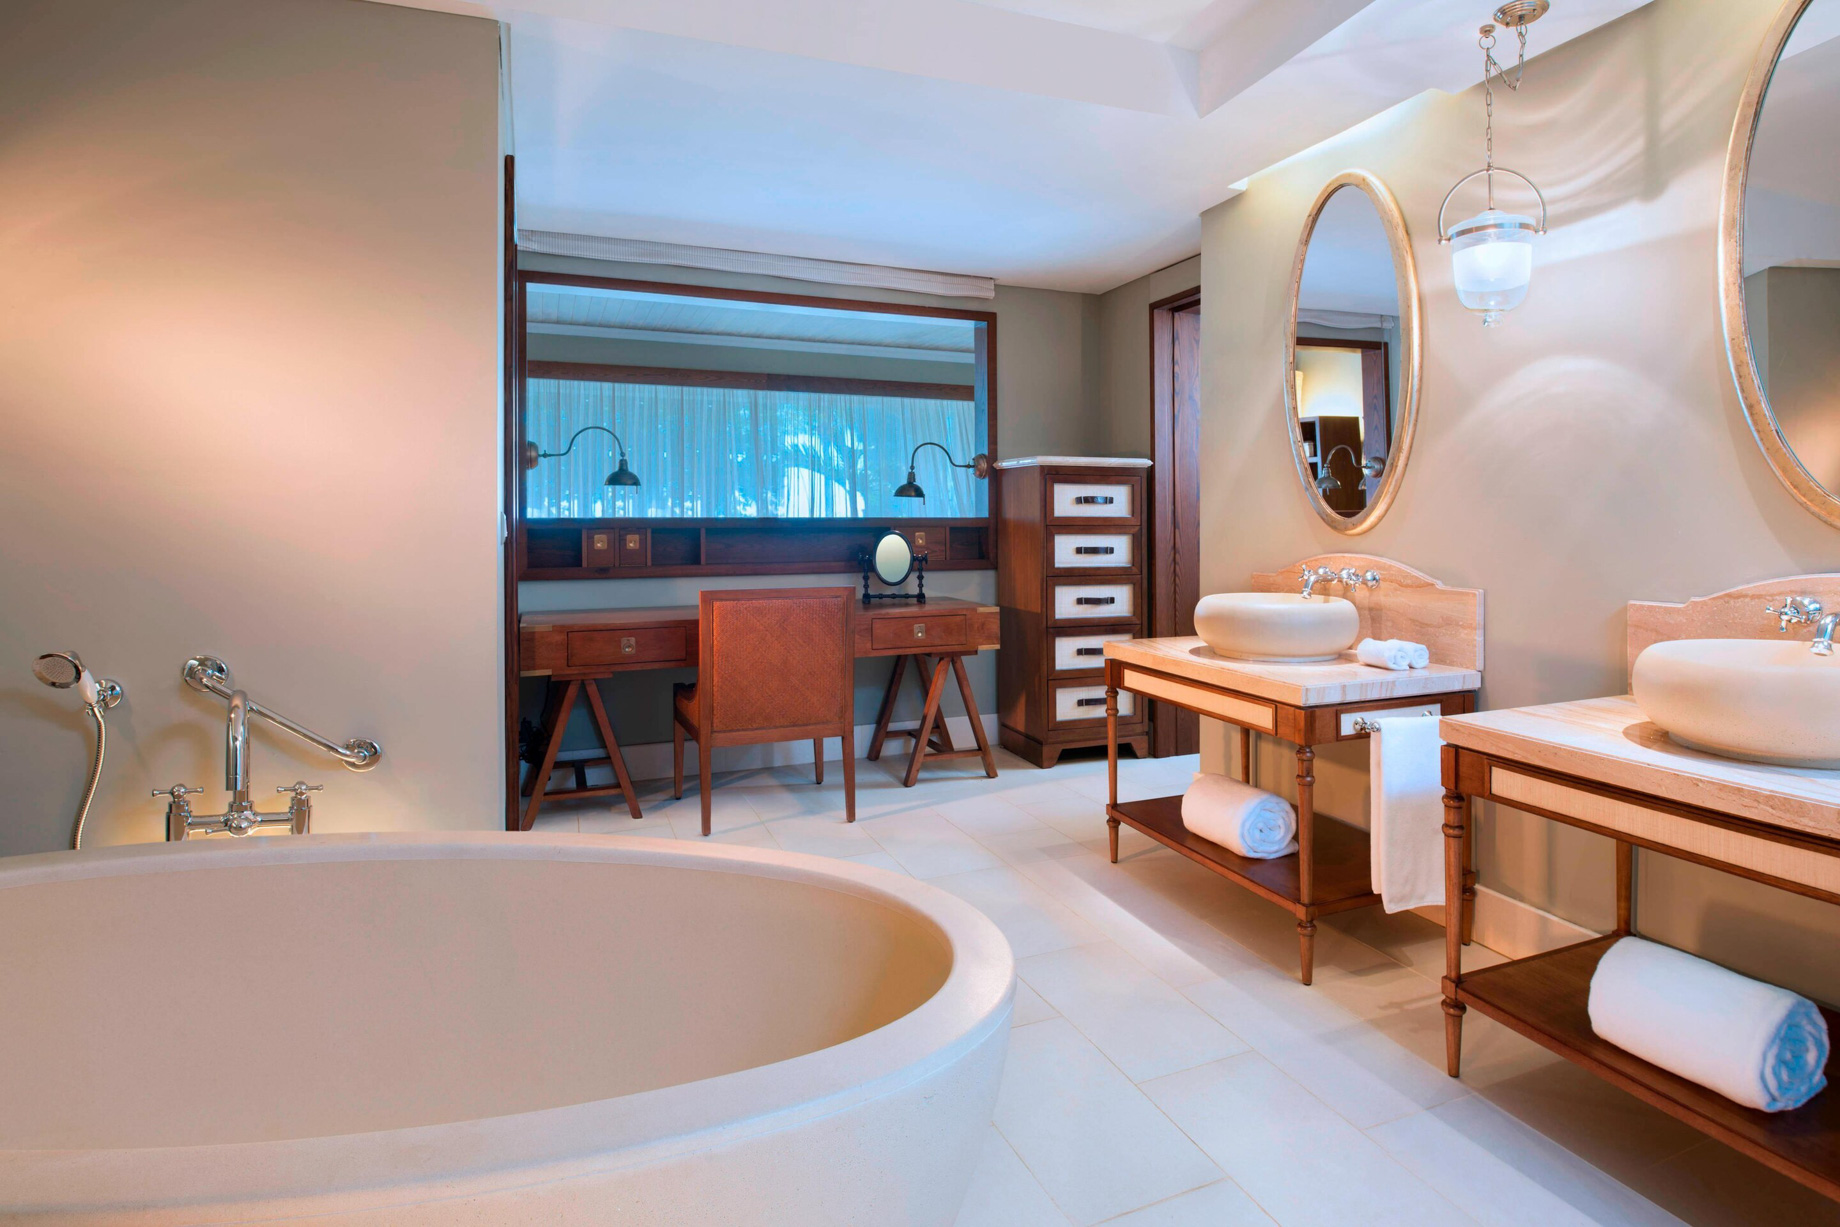 JW Marriott Mauritius Resort - Mauritius - Junior Suite Bathroom